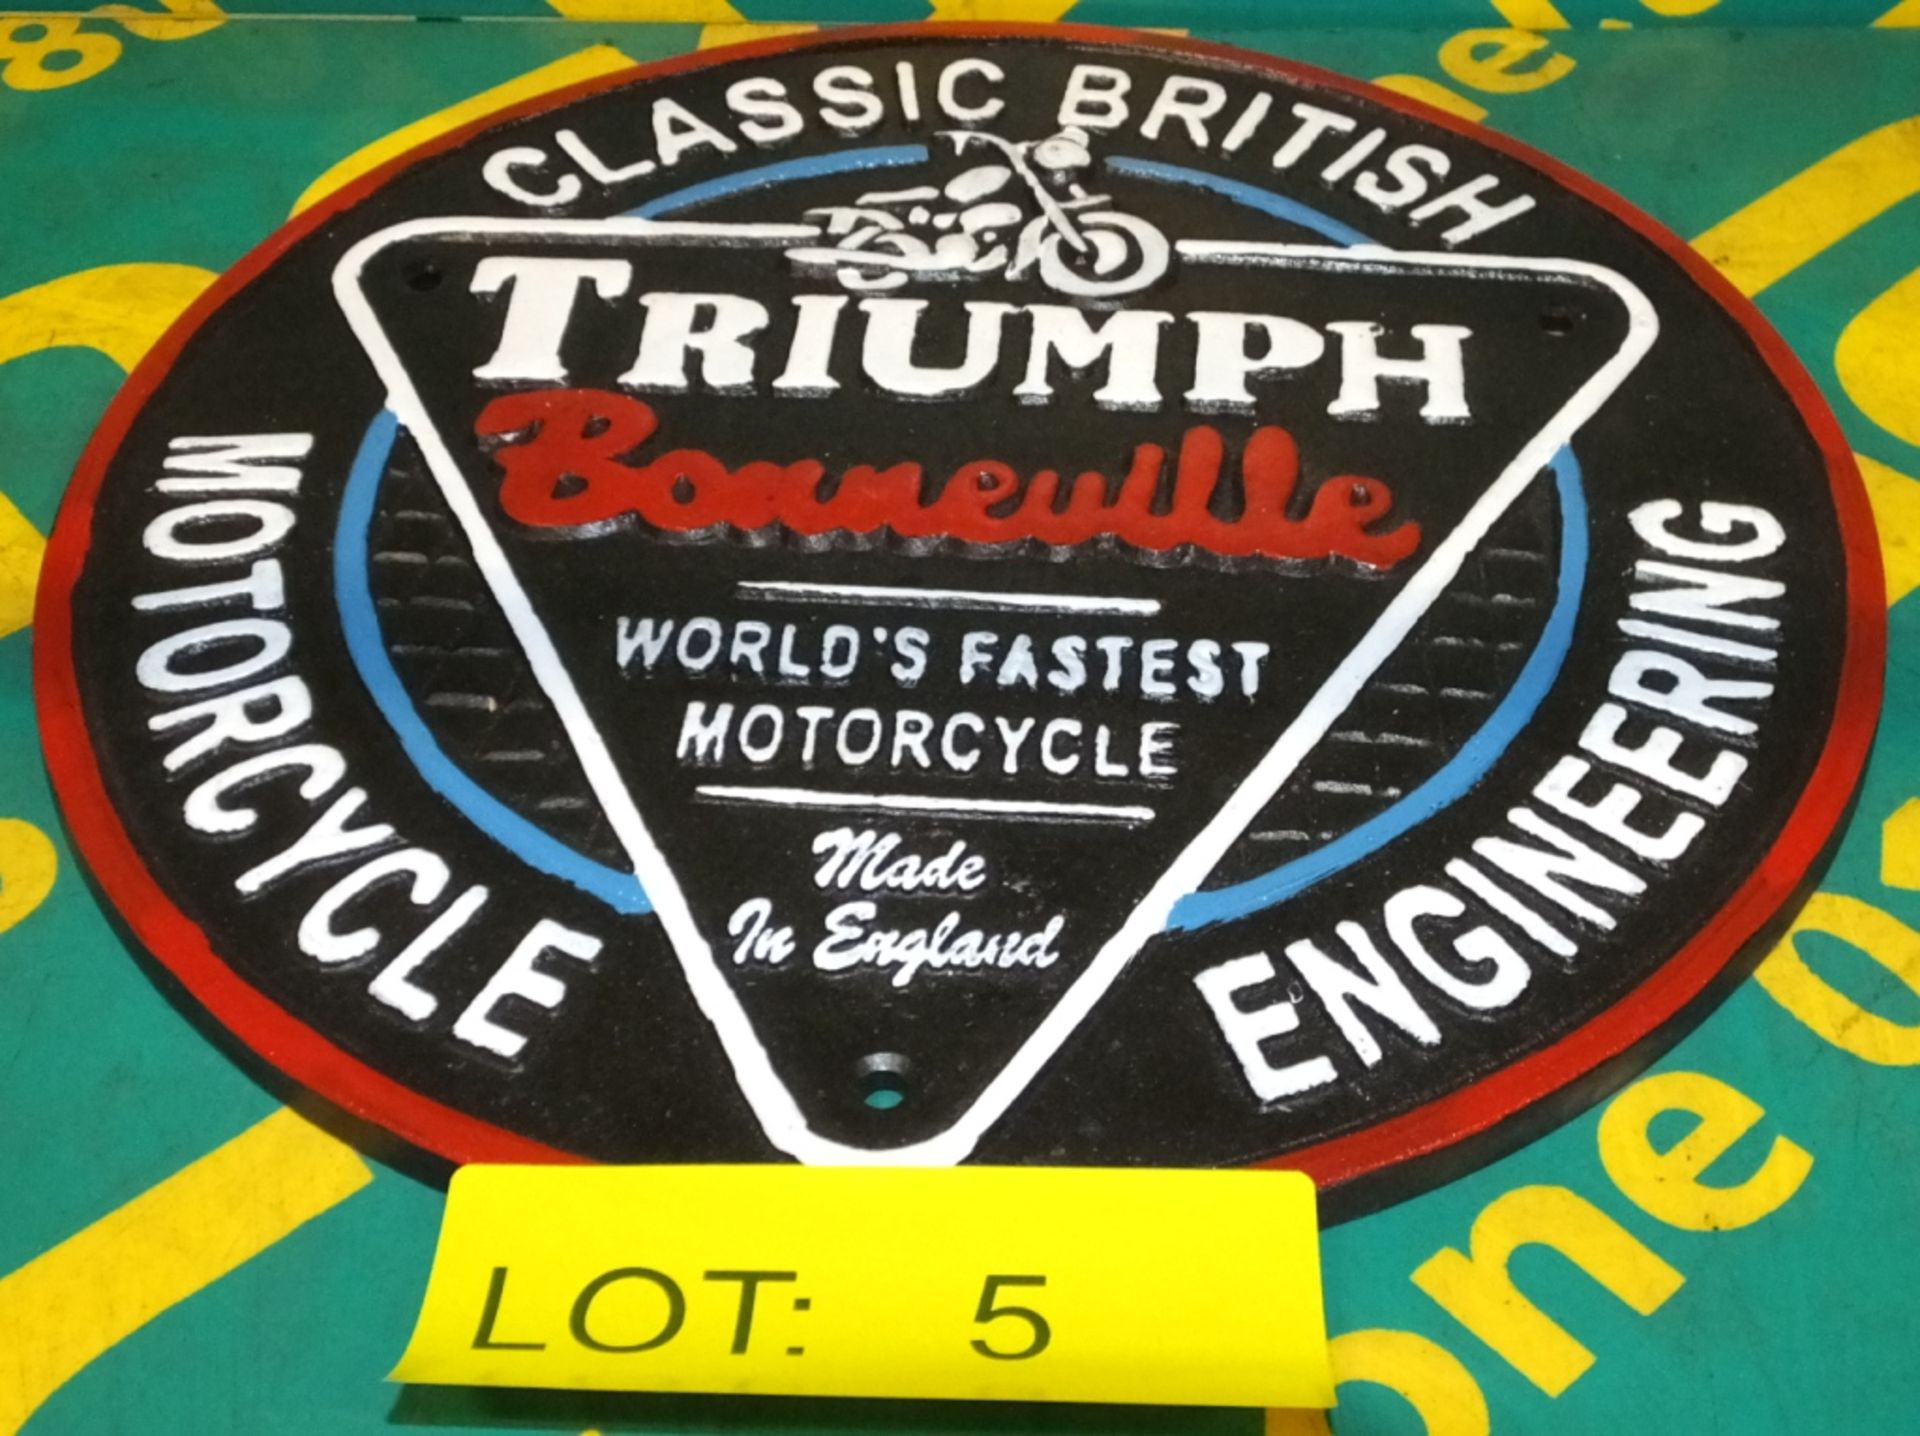 Cast Motorbike sign - Triumph Bonneville